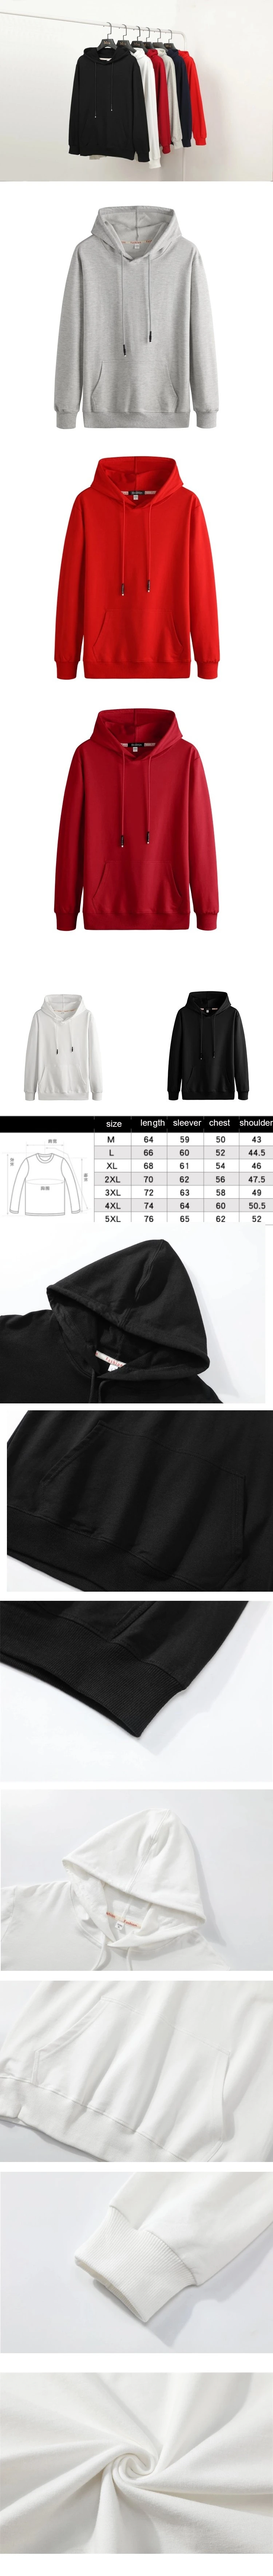 OEM Hoodie Sweatshirt 100% Cotton Long Sleeve Custom Printed Oversize Pullover Hoodies